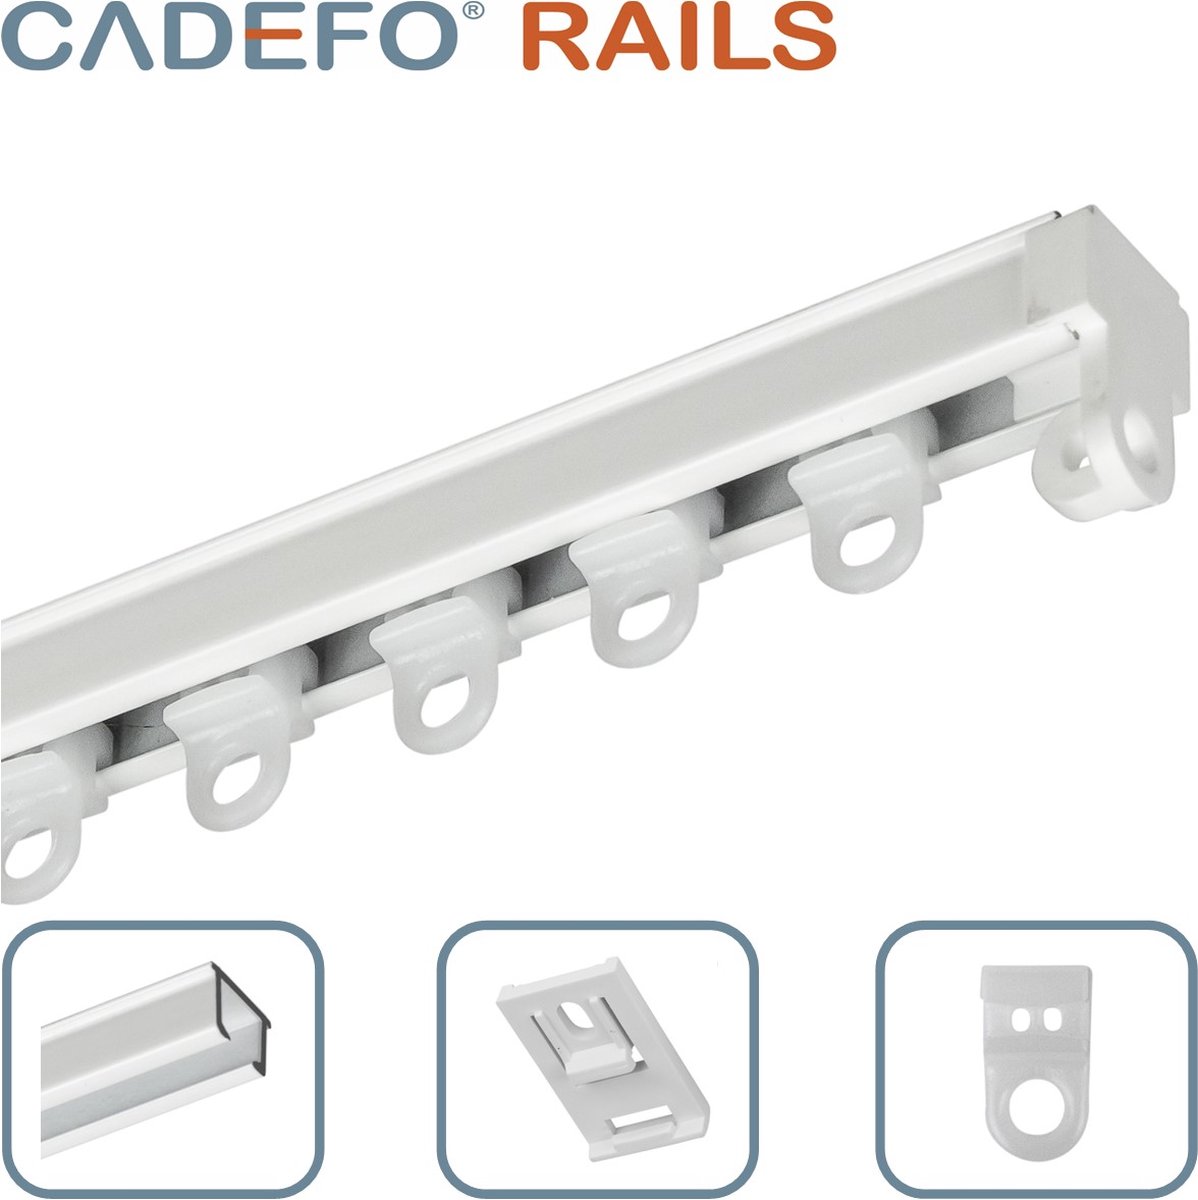 CADEFO RAILS (251 - 300 cm) Gordijnrails - Compleet op maat! - UIT 1 STUK - Leverbaar tot 6 meter - Plafondbevestiging - Lengte 255 cm